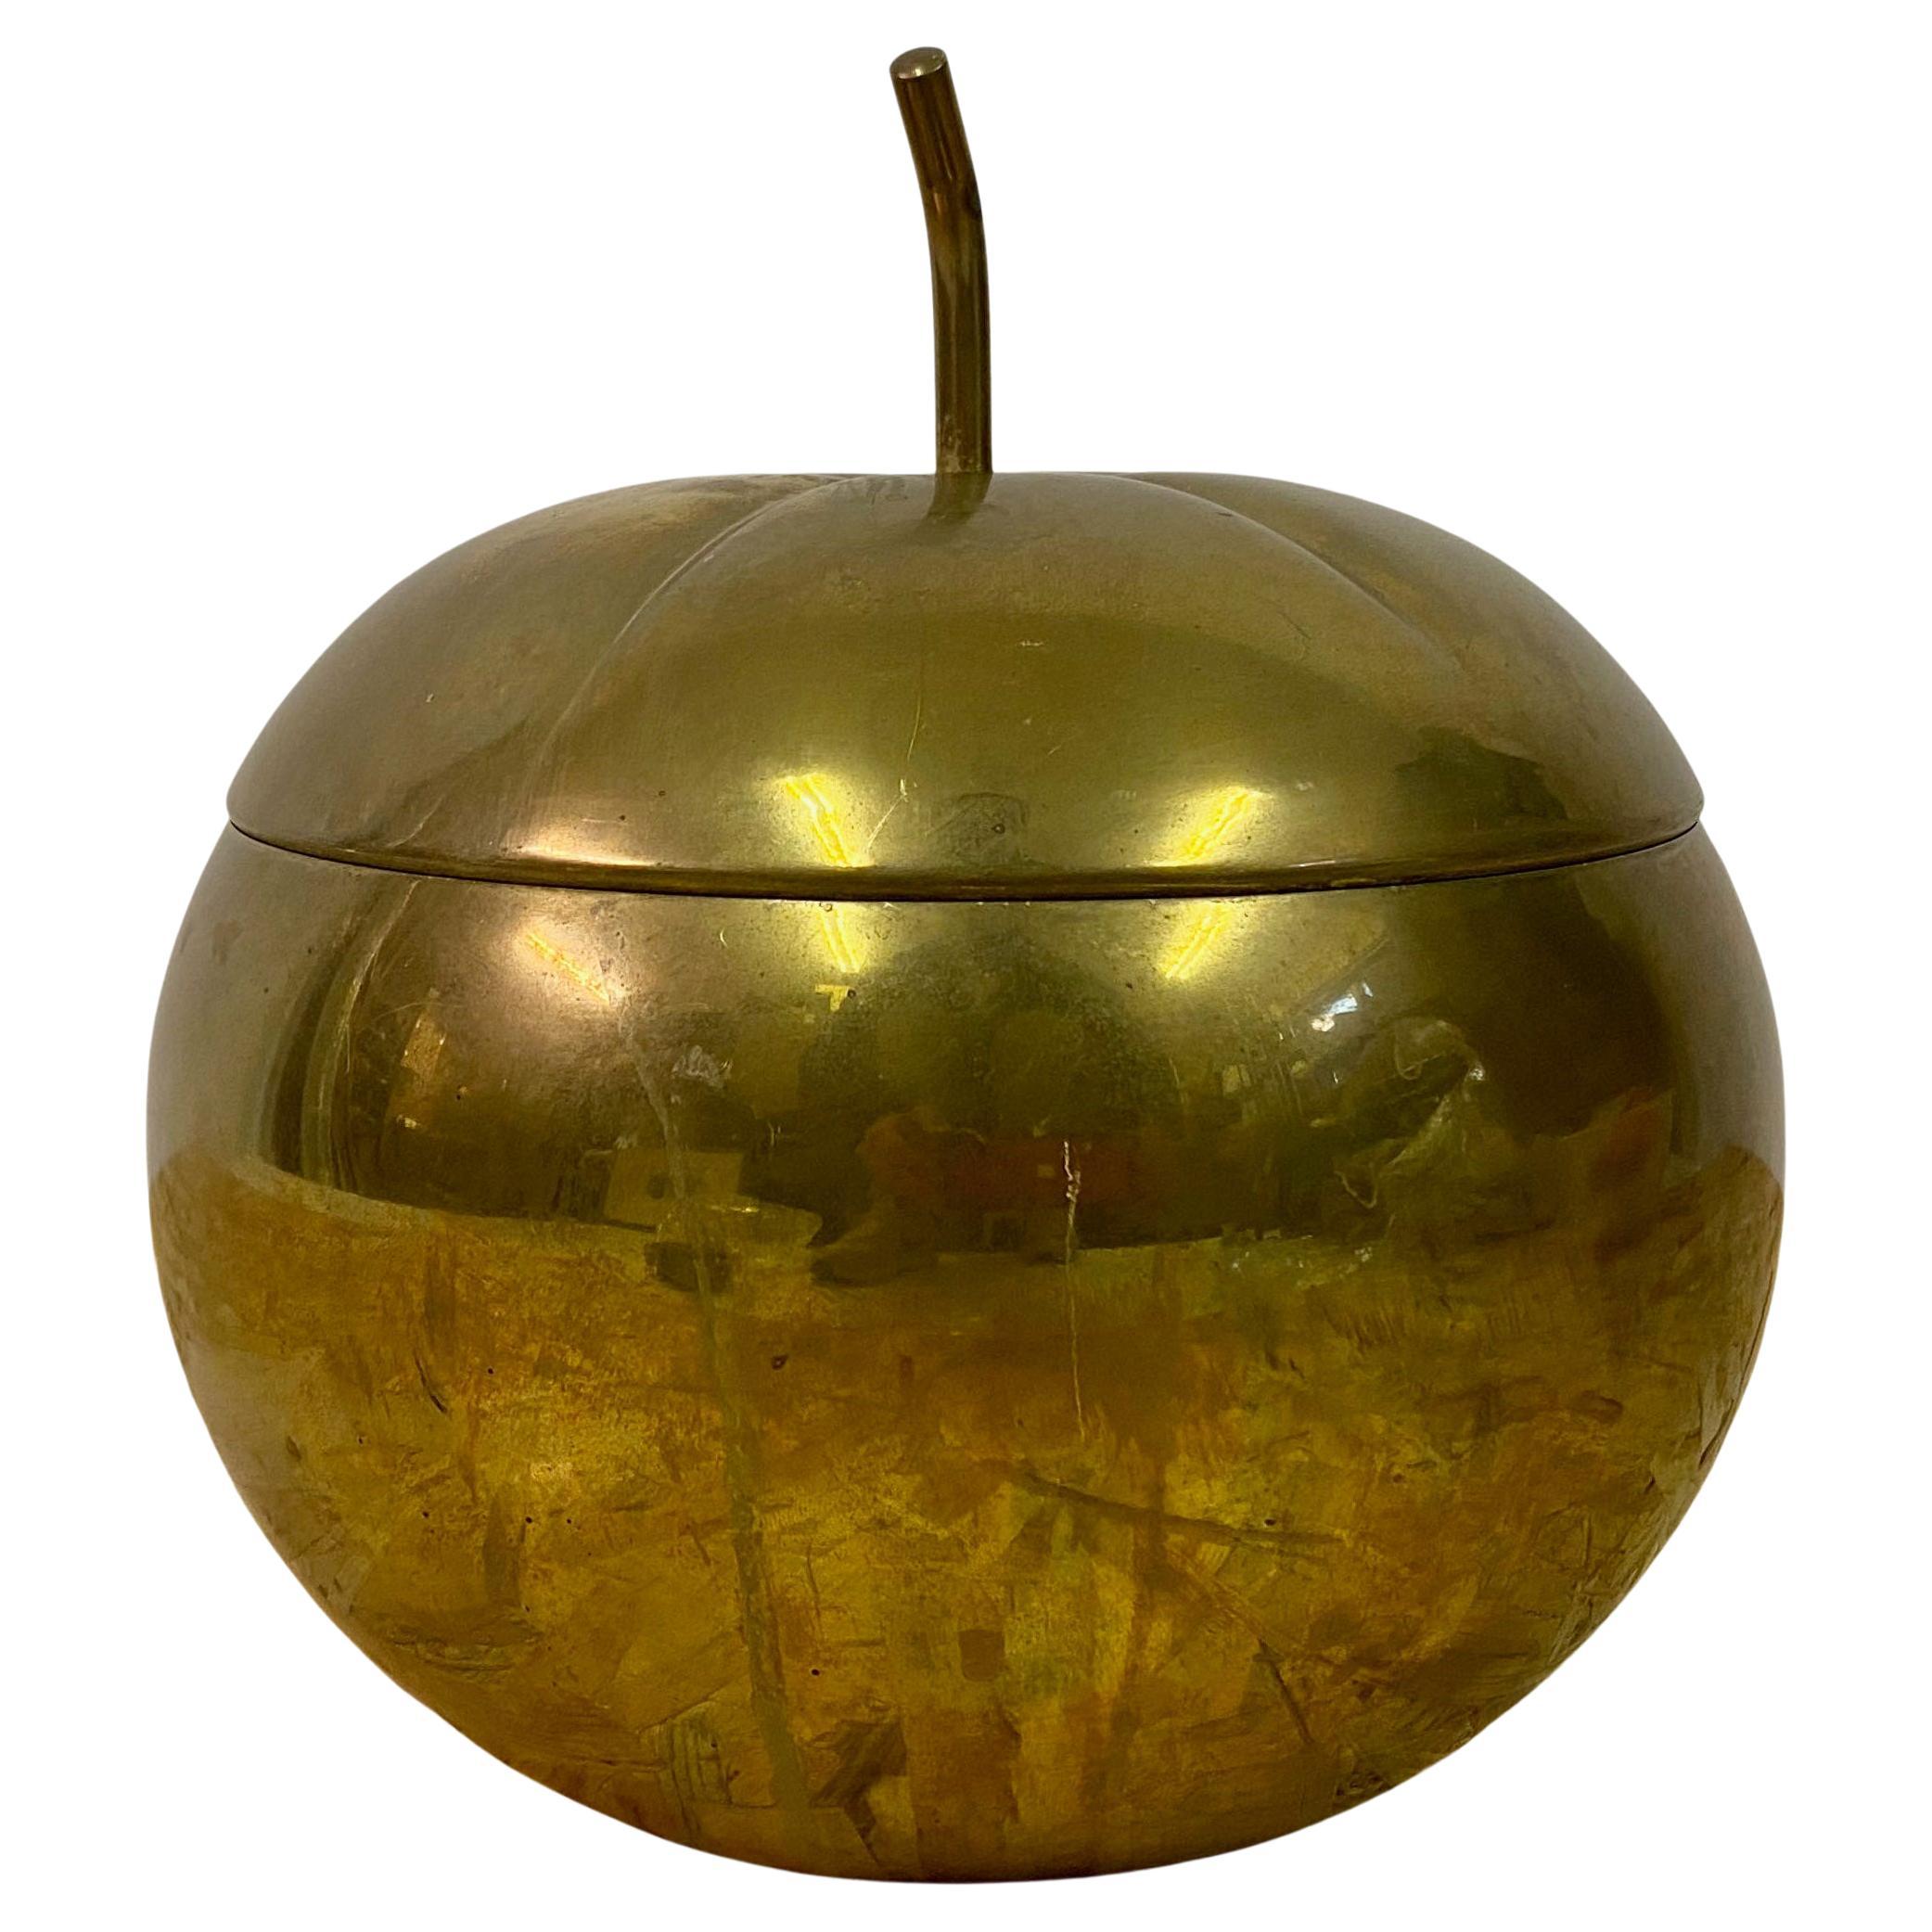 1970s Italian Brass Apple Pot Bucket